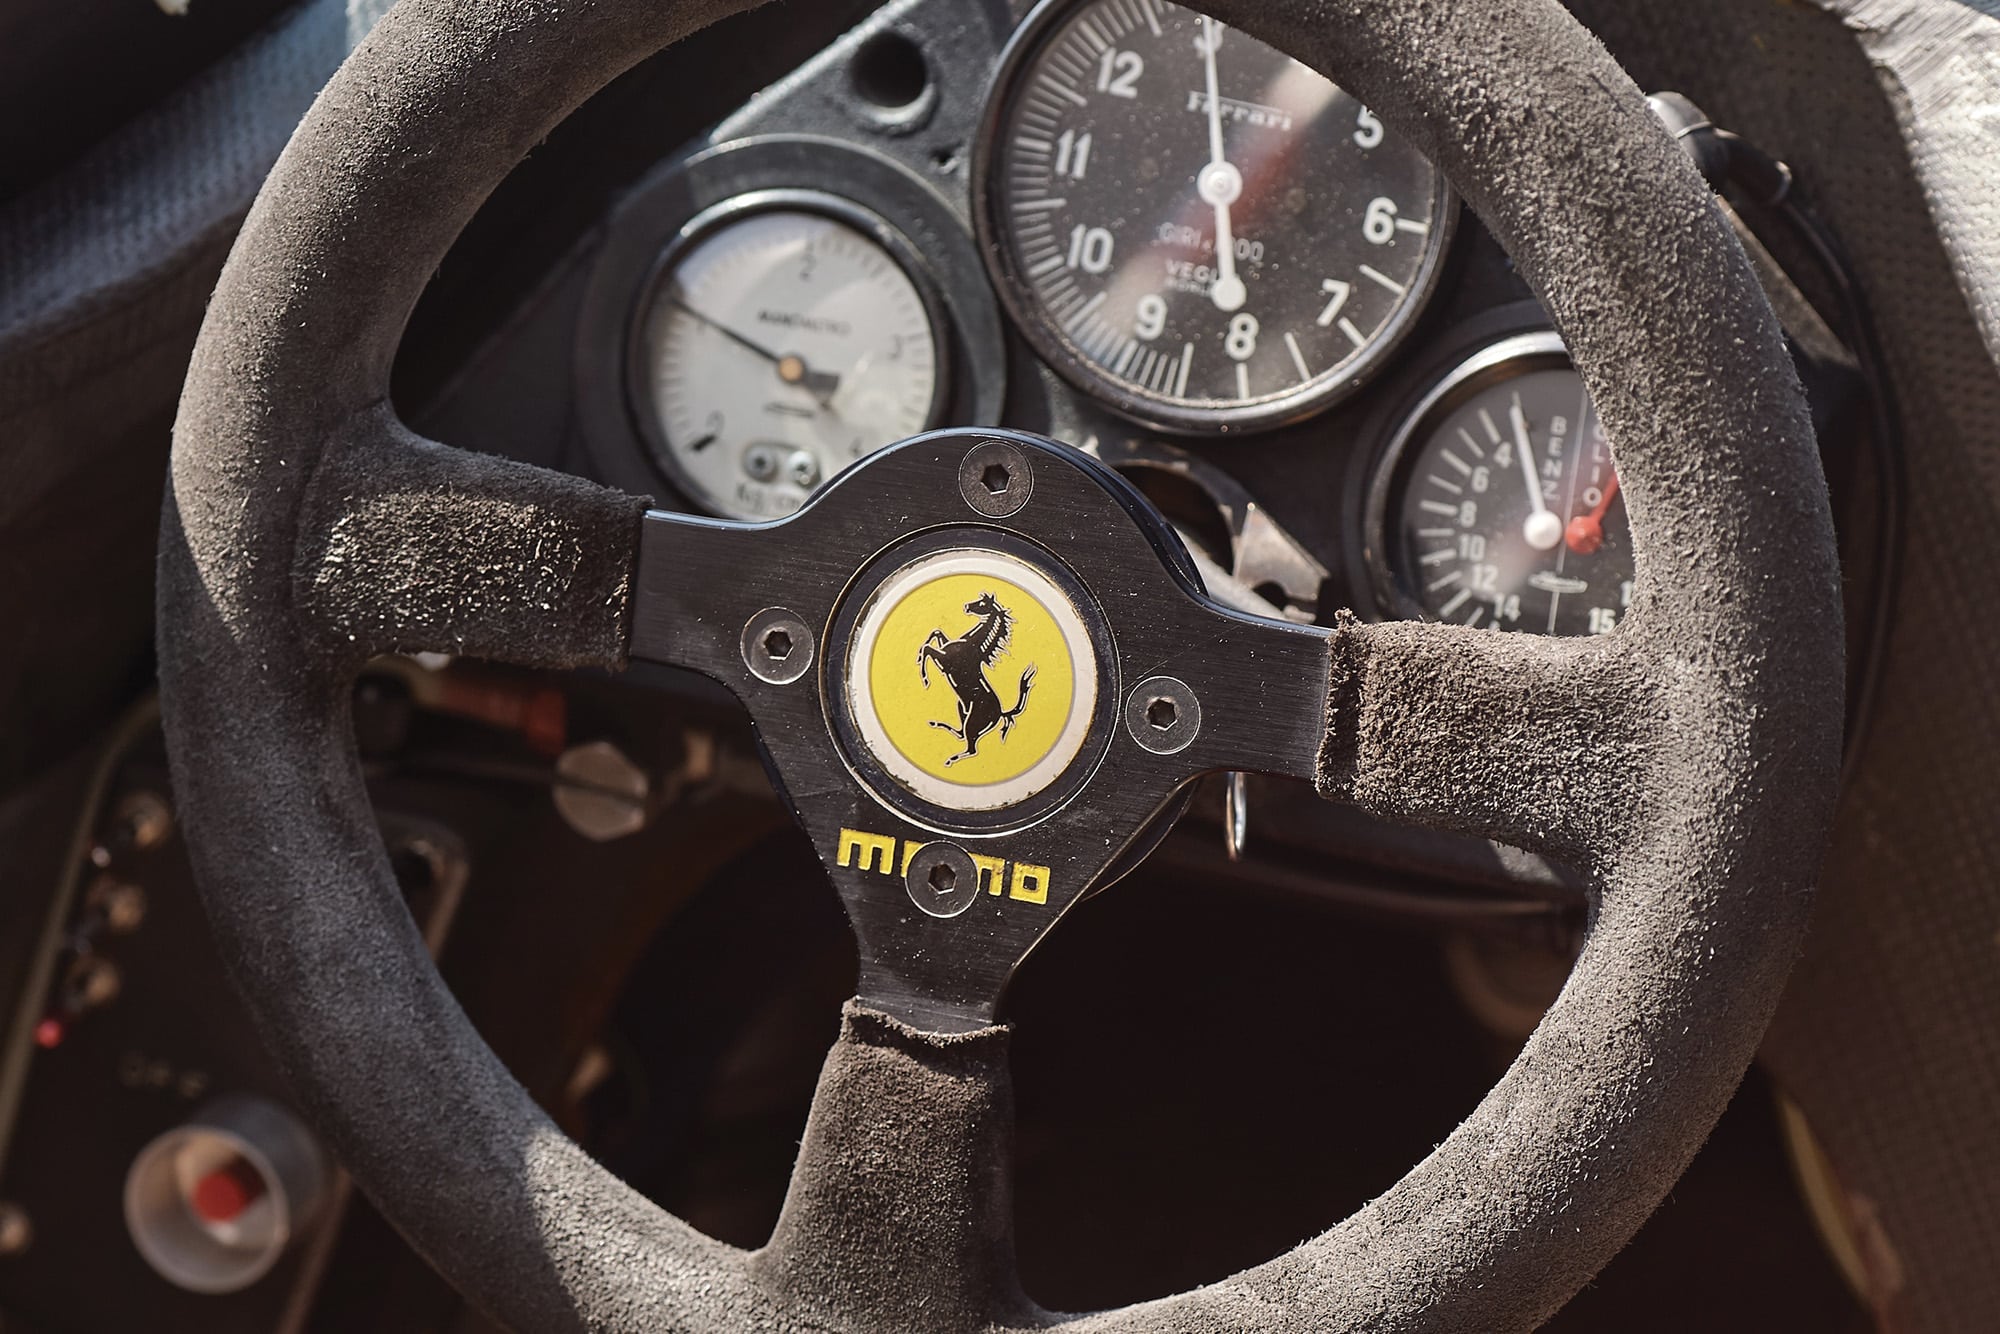 Cockpit of the 1982 F1 Ferrari 126 C2